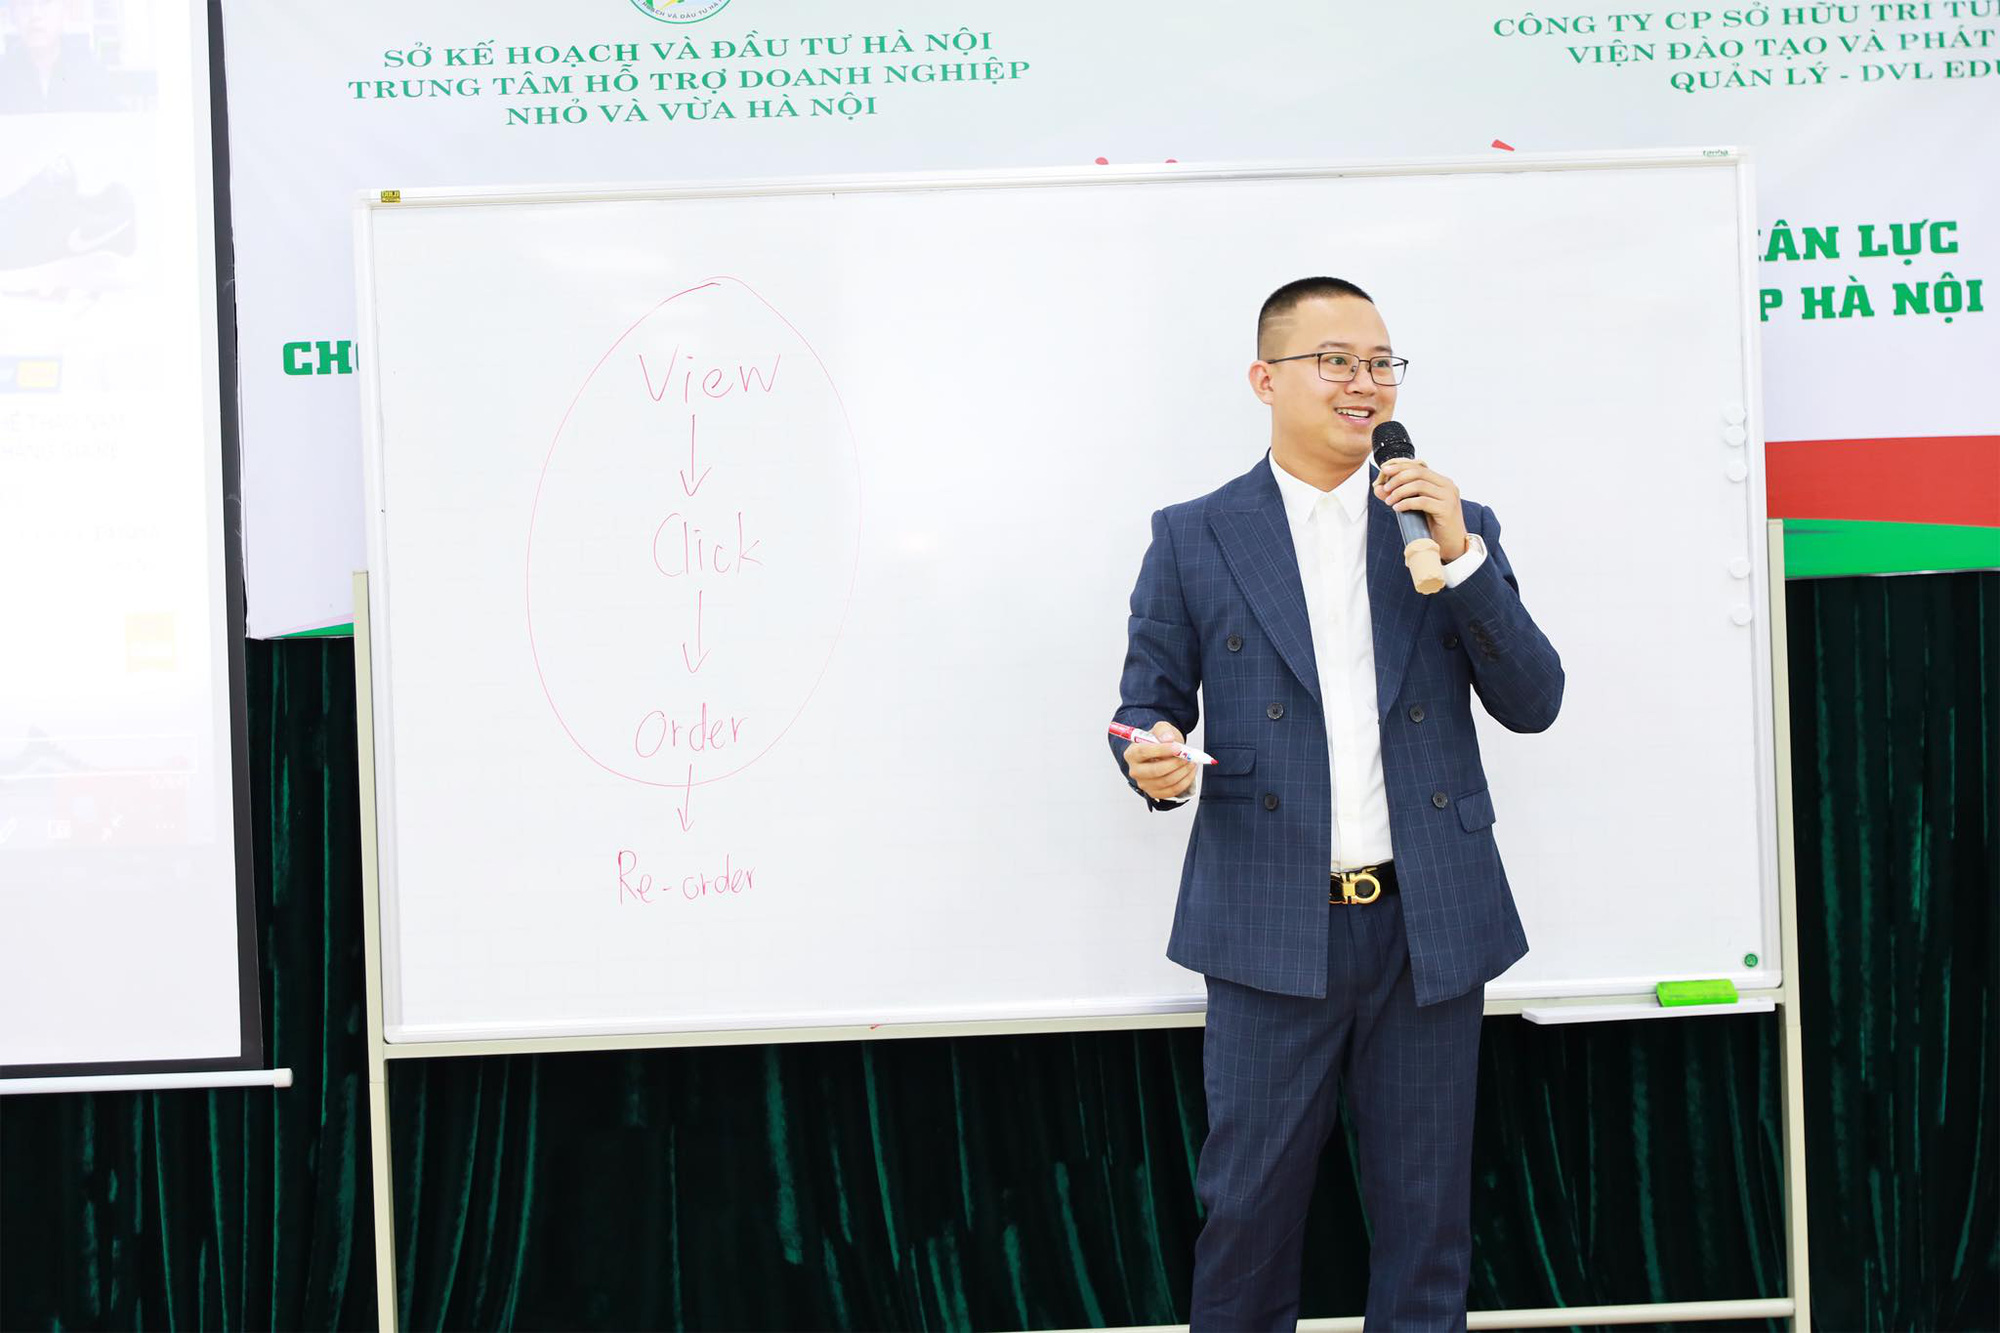 CEO Vũ Việt Linh hé lộ chiến lược tăng lợi nhuận kinh doanh trên Shopee - Ảnh 1.